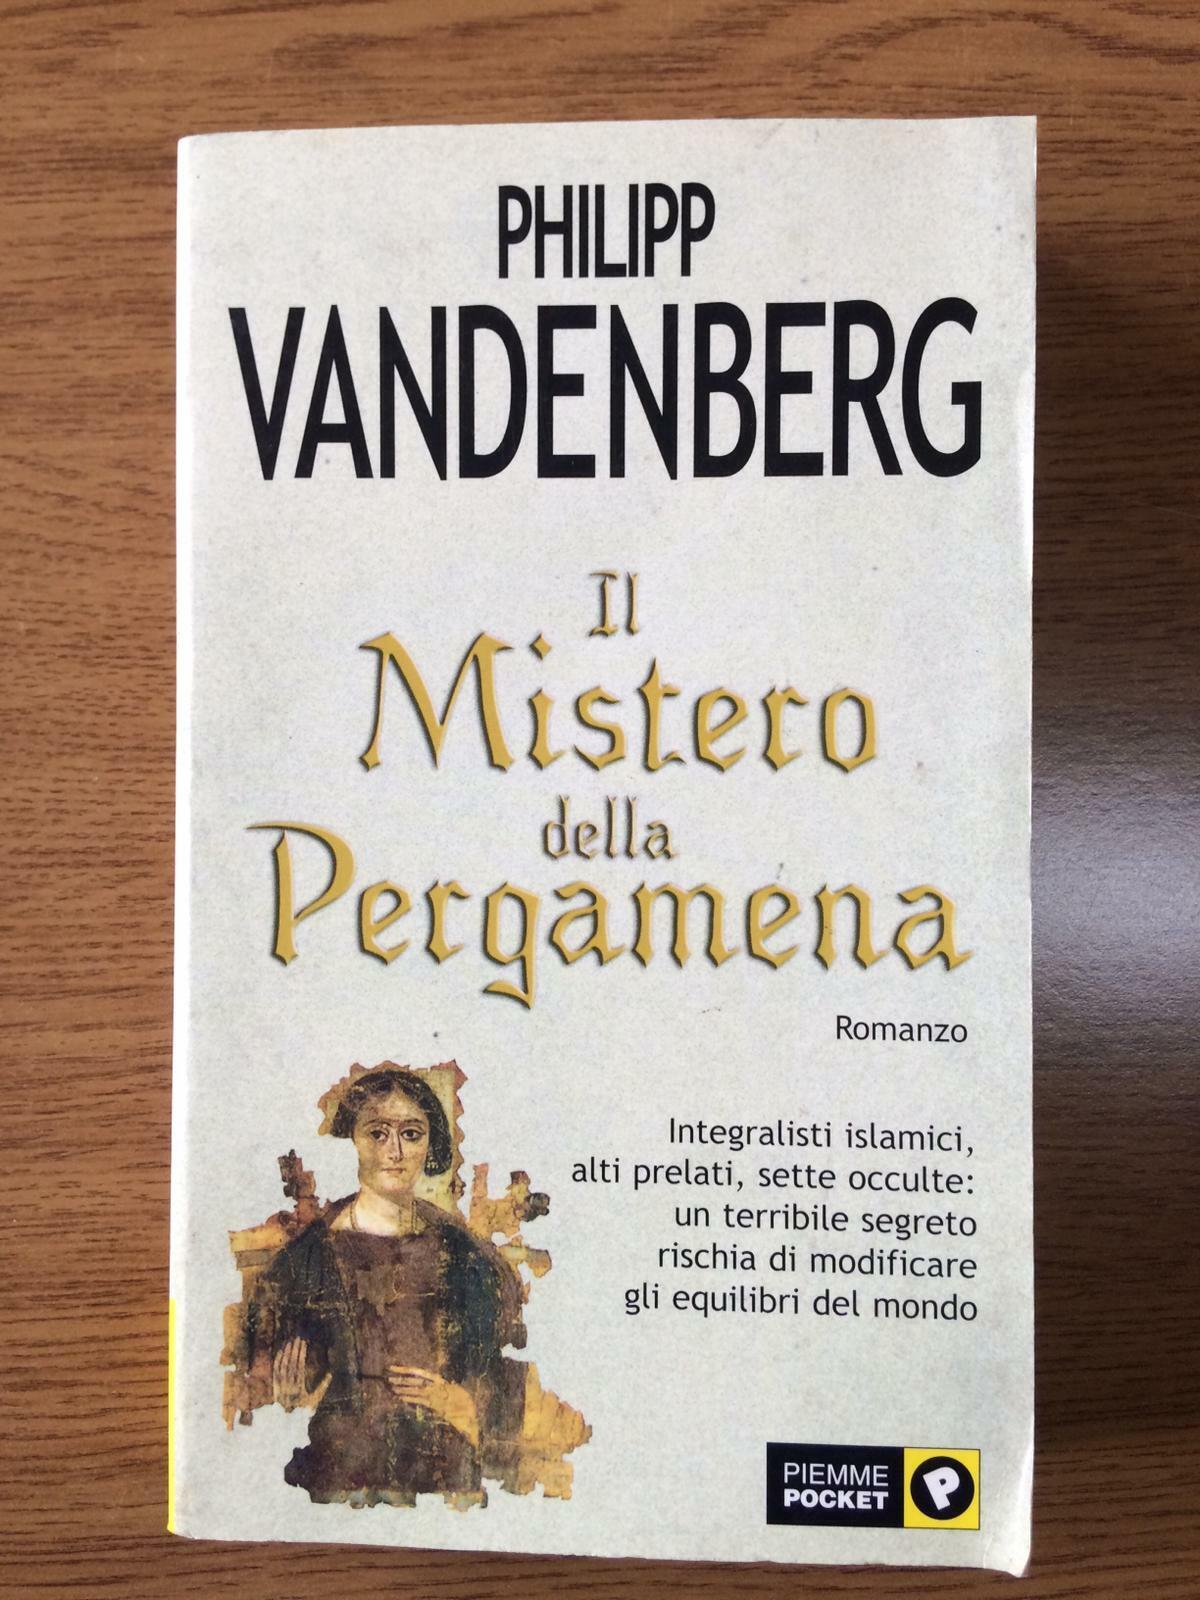 Il mistero della pergamena - P. Vandenberg - Piemme pocket - 2003 - AR